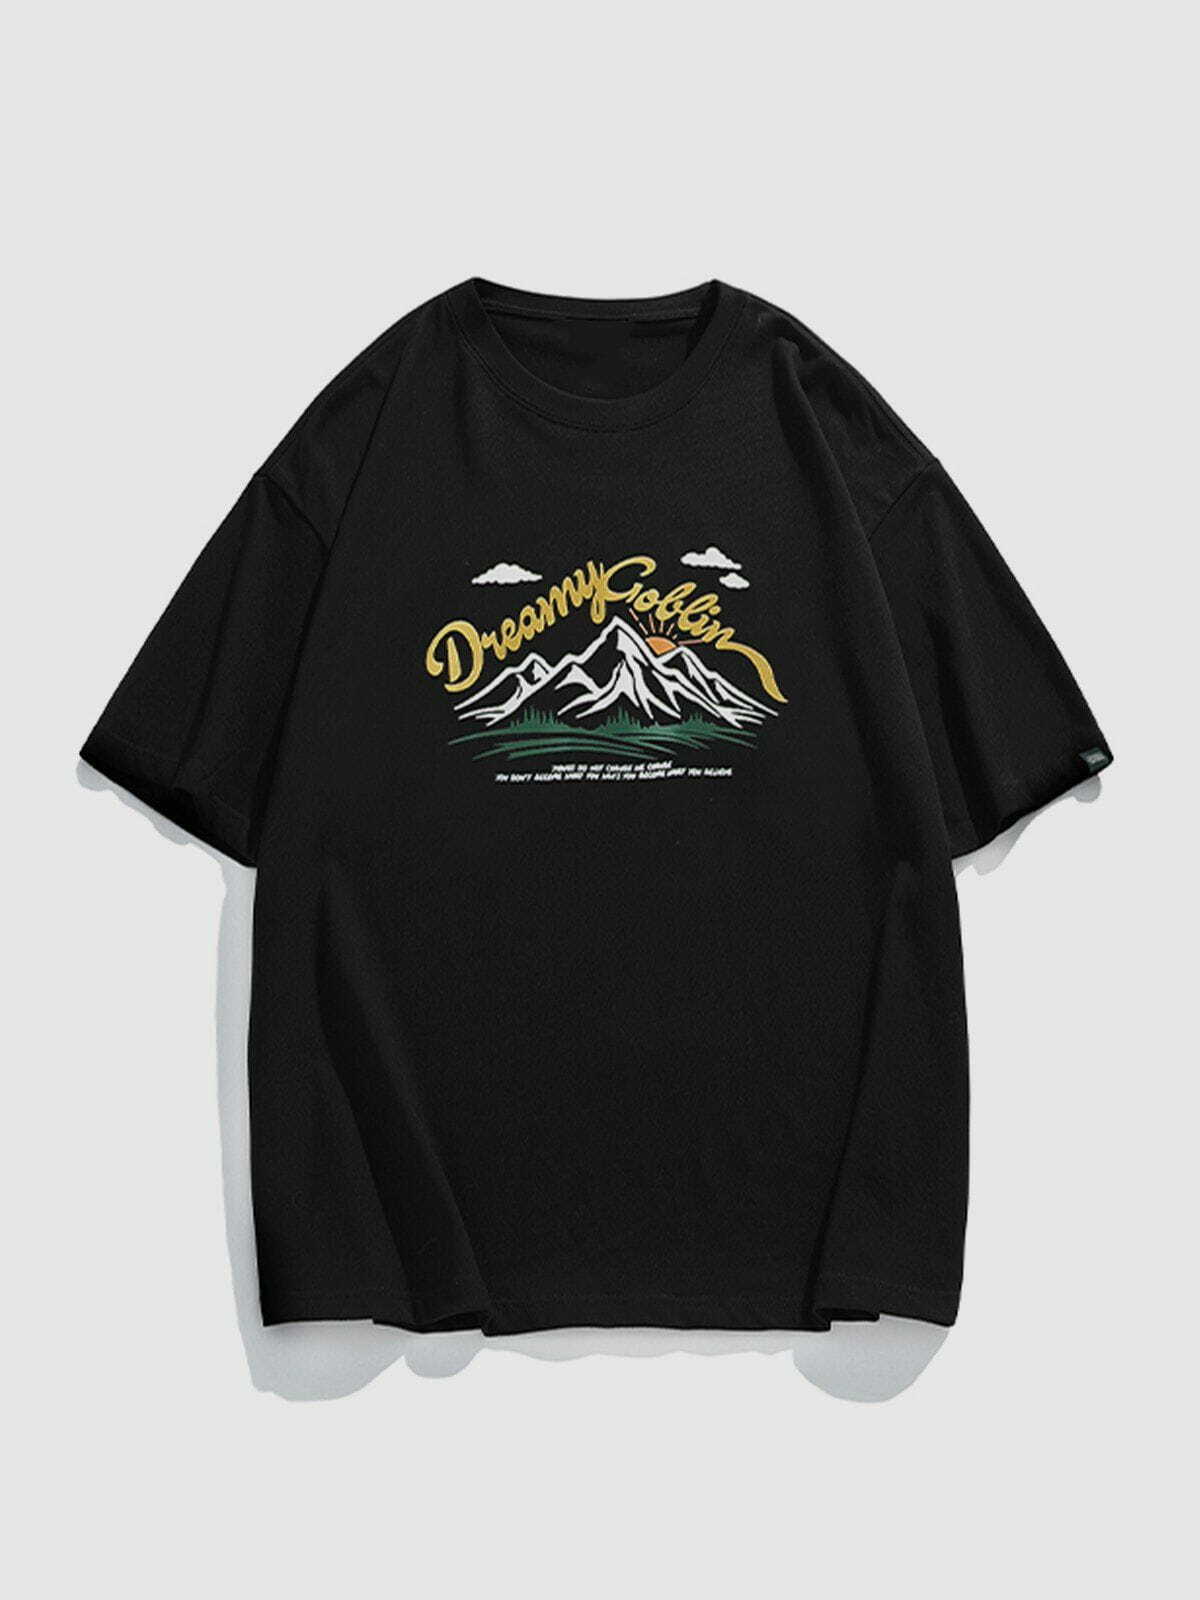 retro mountain tee edgy  vibrant y2k streetwear tshirt 5951